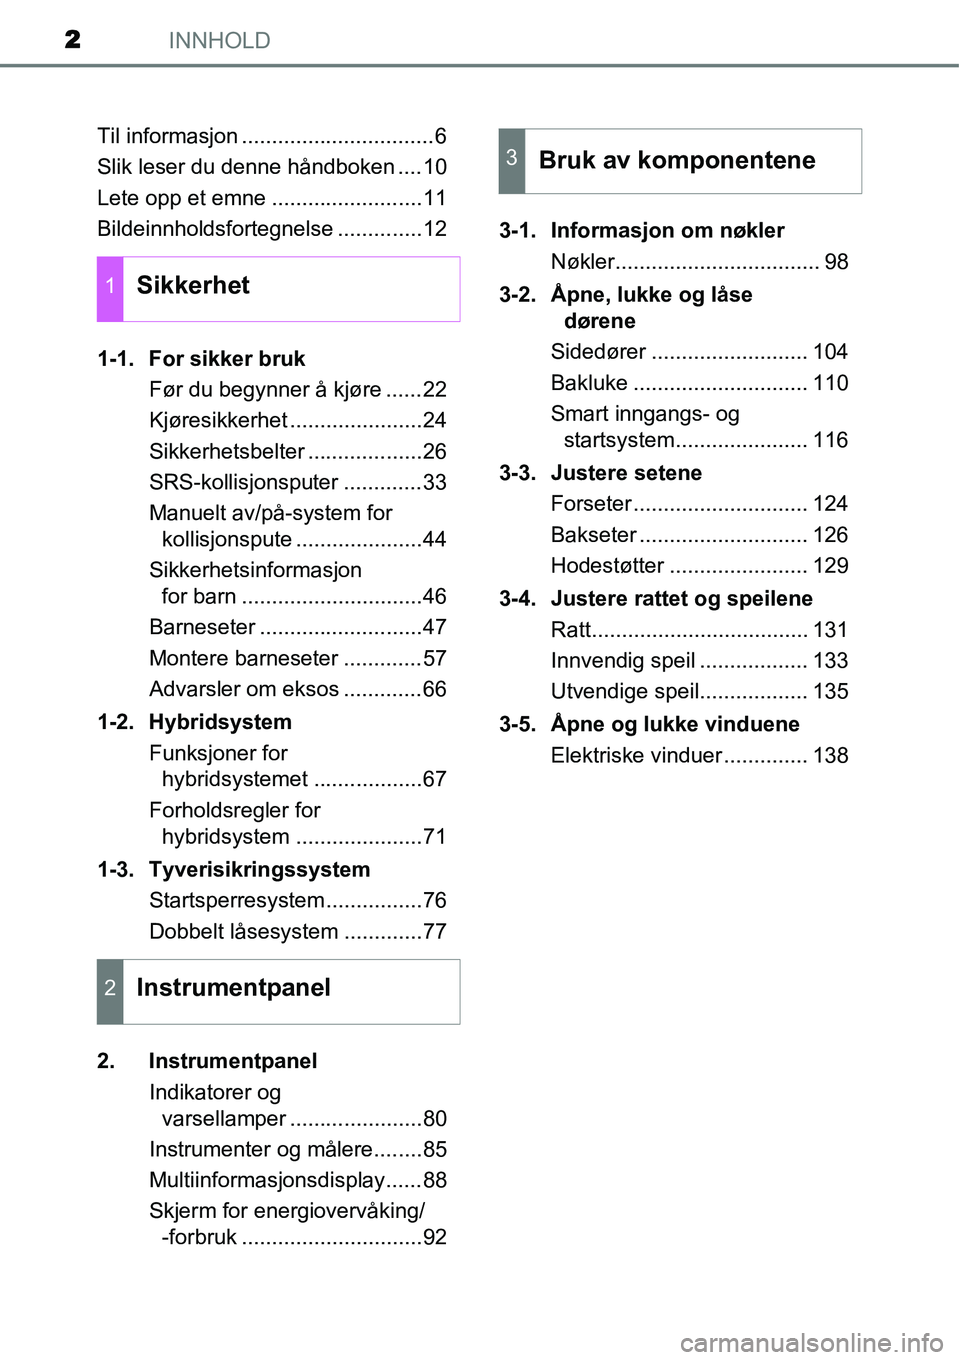 TOYOTA YARIS HYBRID 2014  Instruksjoner for bruk (in Norwegian) INNHOLD2
Til informasjon ................................6
Slik leser du denne håndboken ....10
Lete opp et emne .........................11
Bildeinnholdsfortegnelse ..............12
1-1. For sikker 